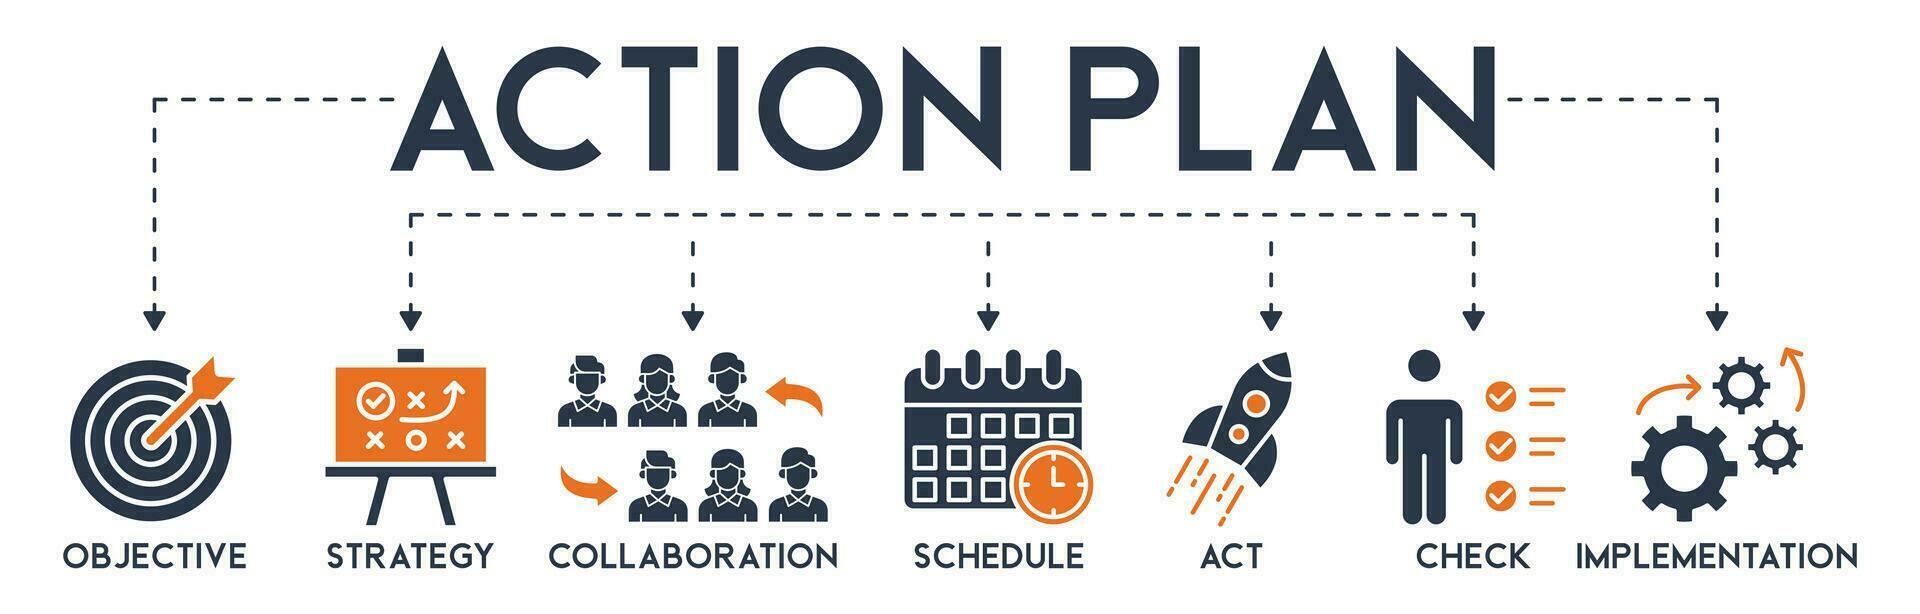 acción plan bandera web icono vector ilustración concepto con icono de objetivo, estrategia, colaboración, cronograma, acto, lanzamiento, controlar, y implementación